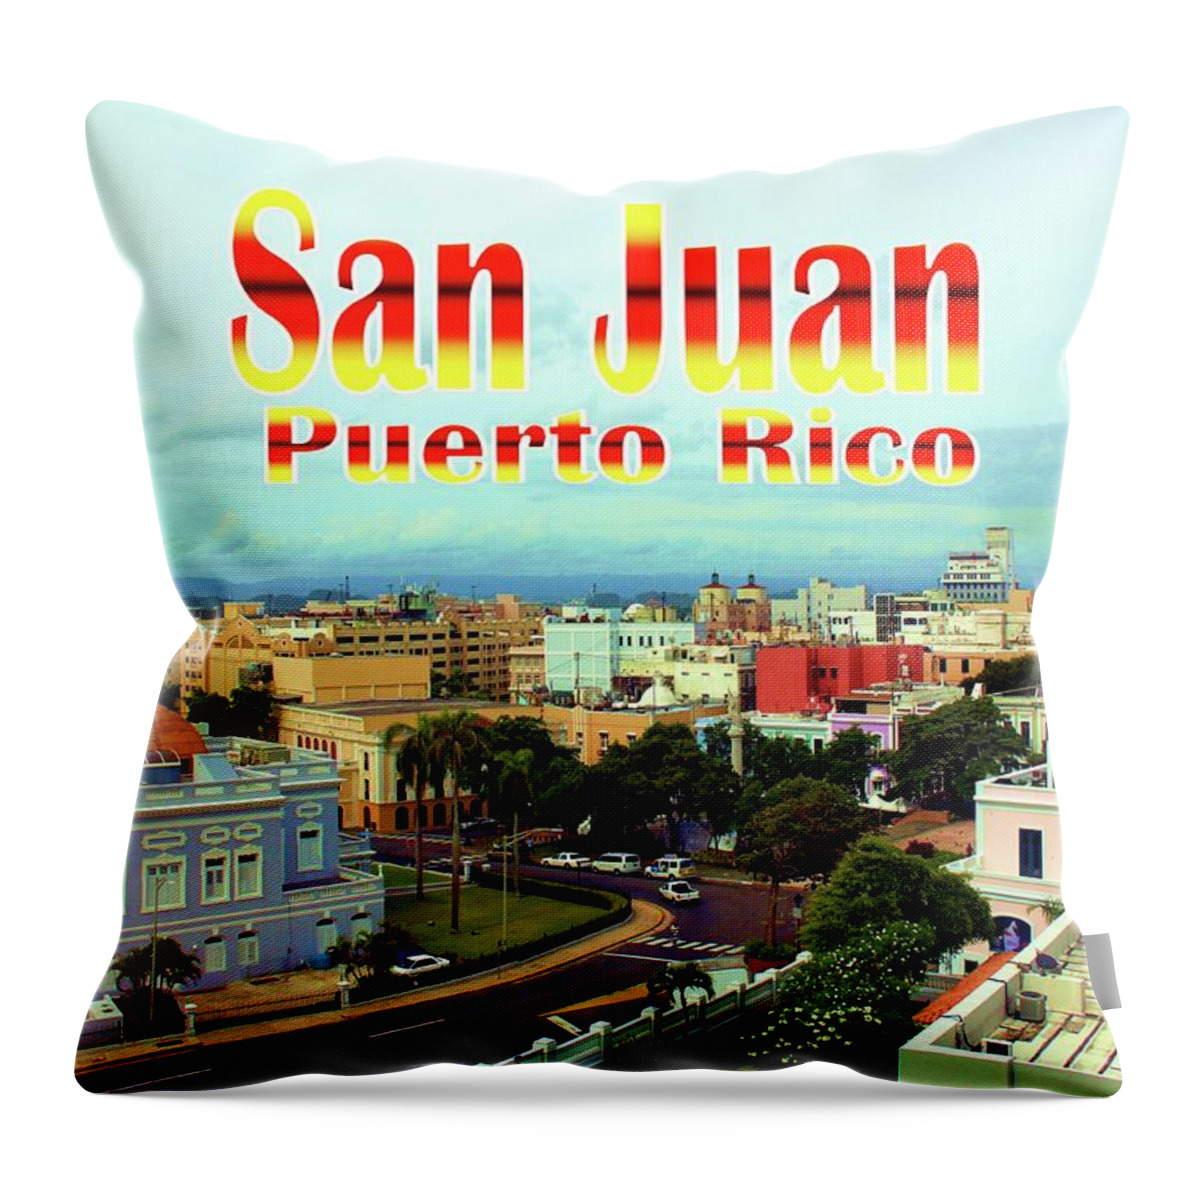 Postcard Throw Pillow featuring the photograph San Juan Postcard by Robert Wilder Jr